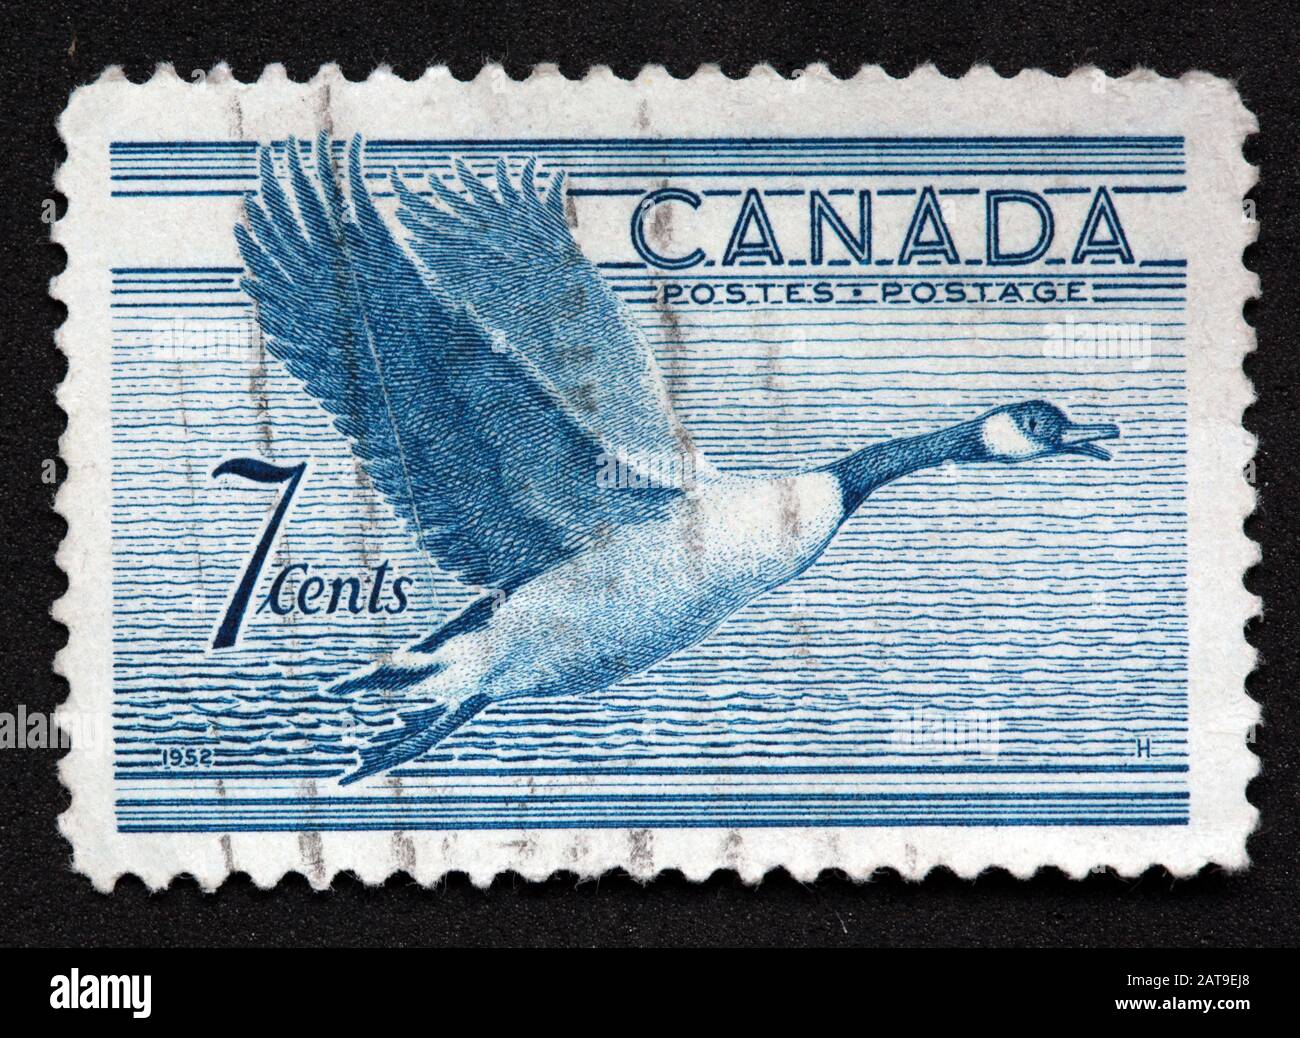 Timbro canadese, timbro del Canada, alberino del Canada, francobollo usato, francobollo blu, Canada 7cents , 1952, oca del Canada, postes, affrancatura postale Foto Stock